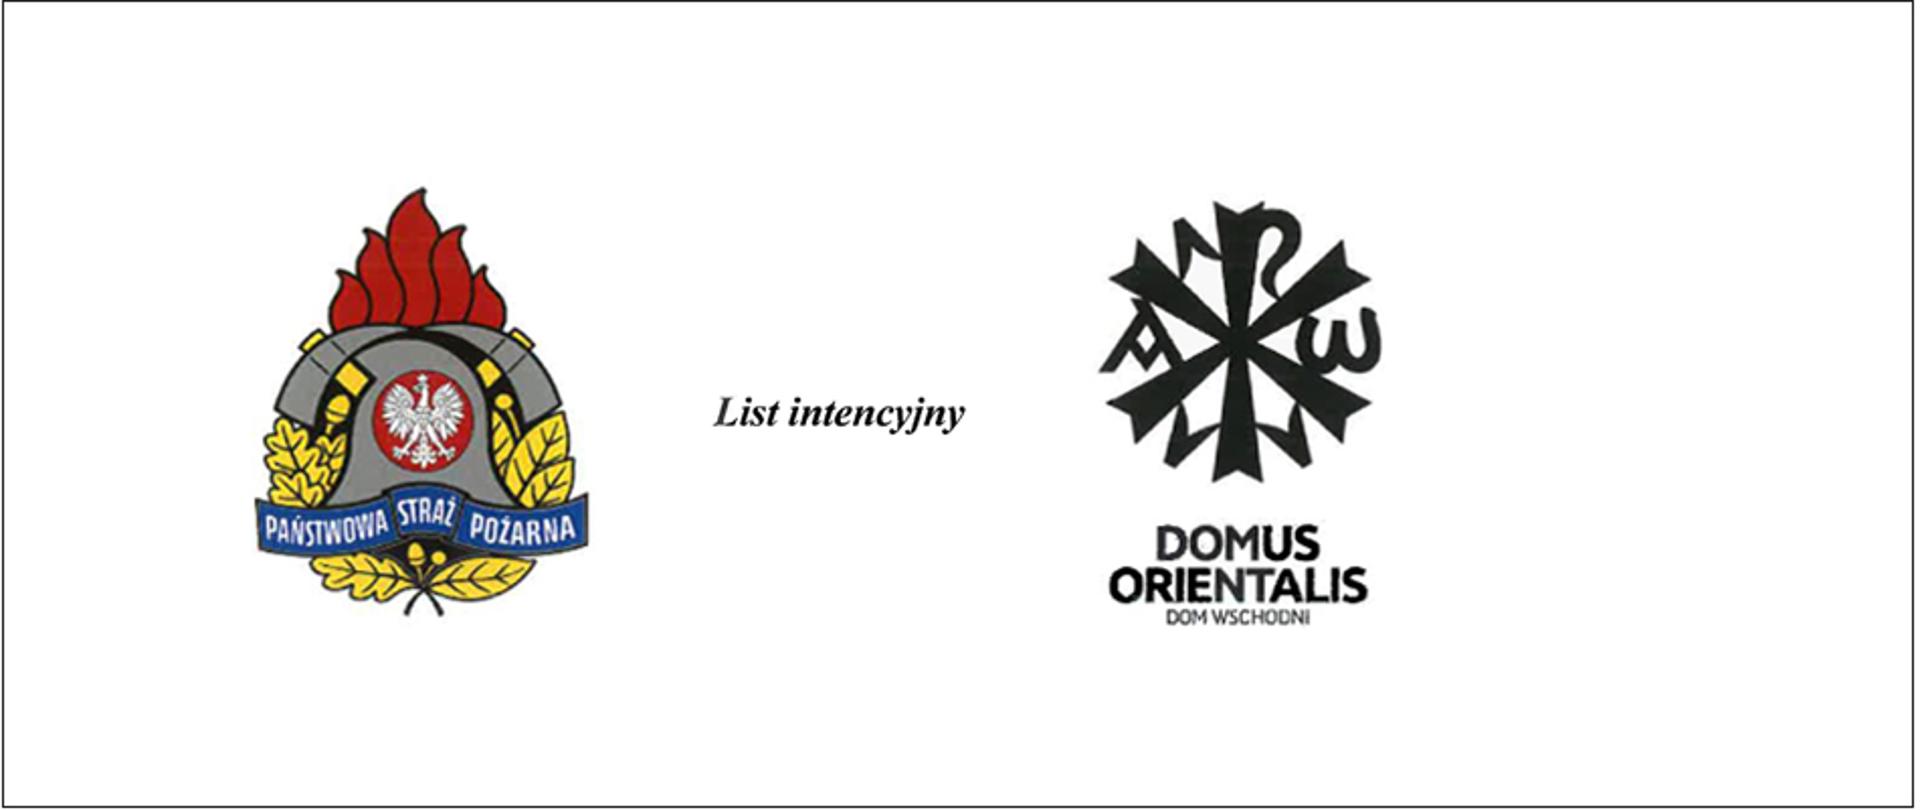 List intencyjny – baner – Na zdjęciu logo PSP i logo DOMUS ORIENTALIS